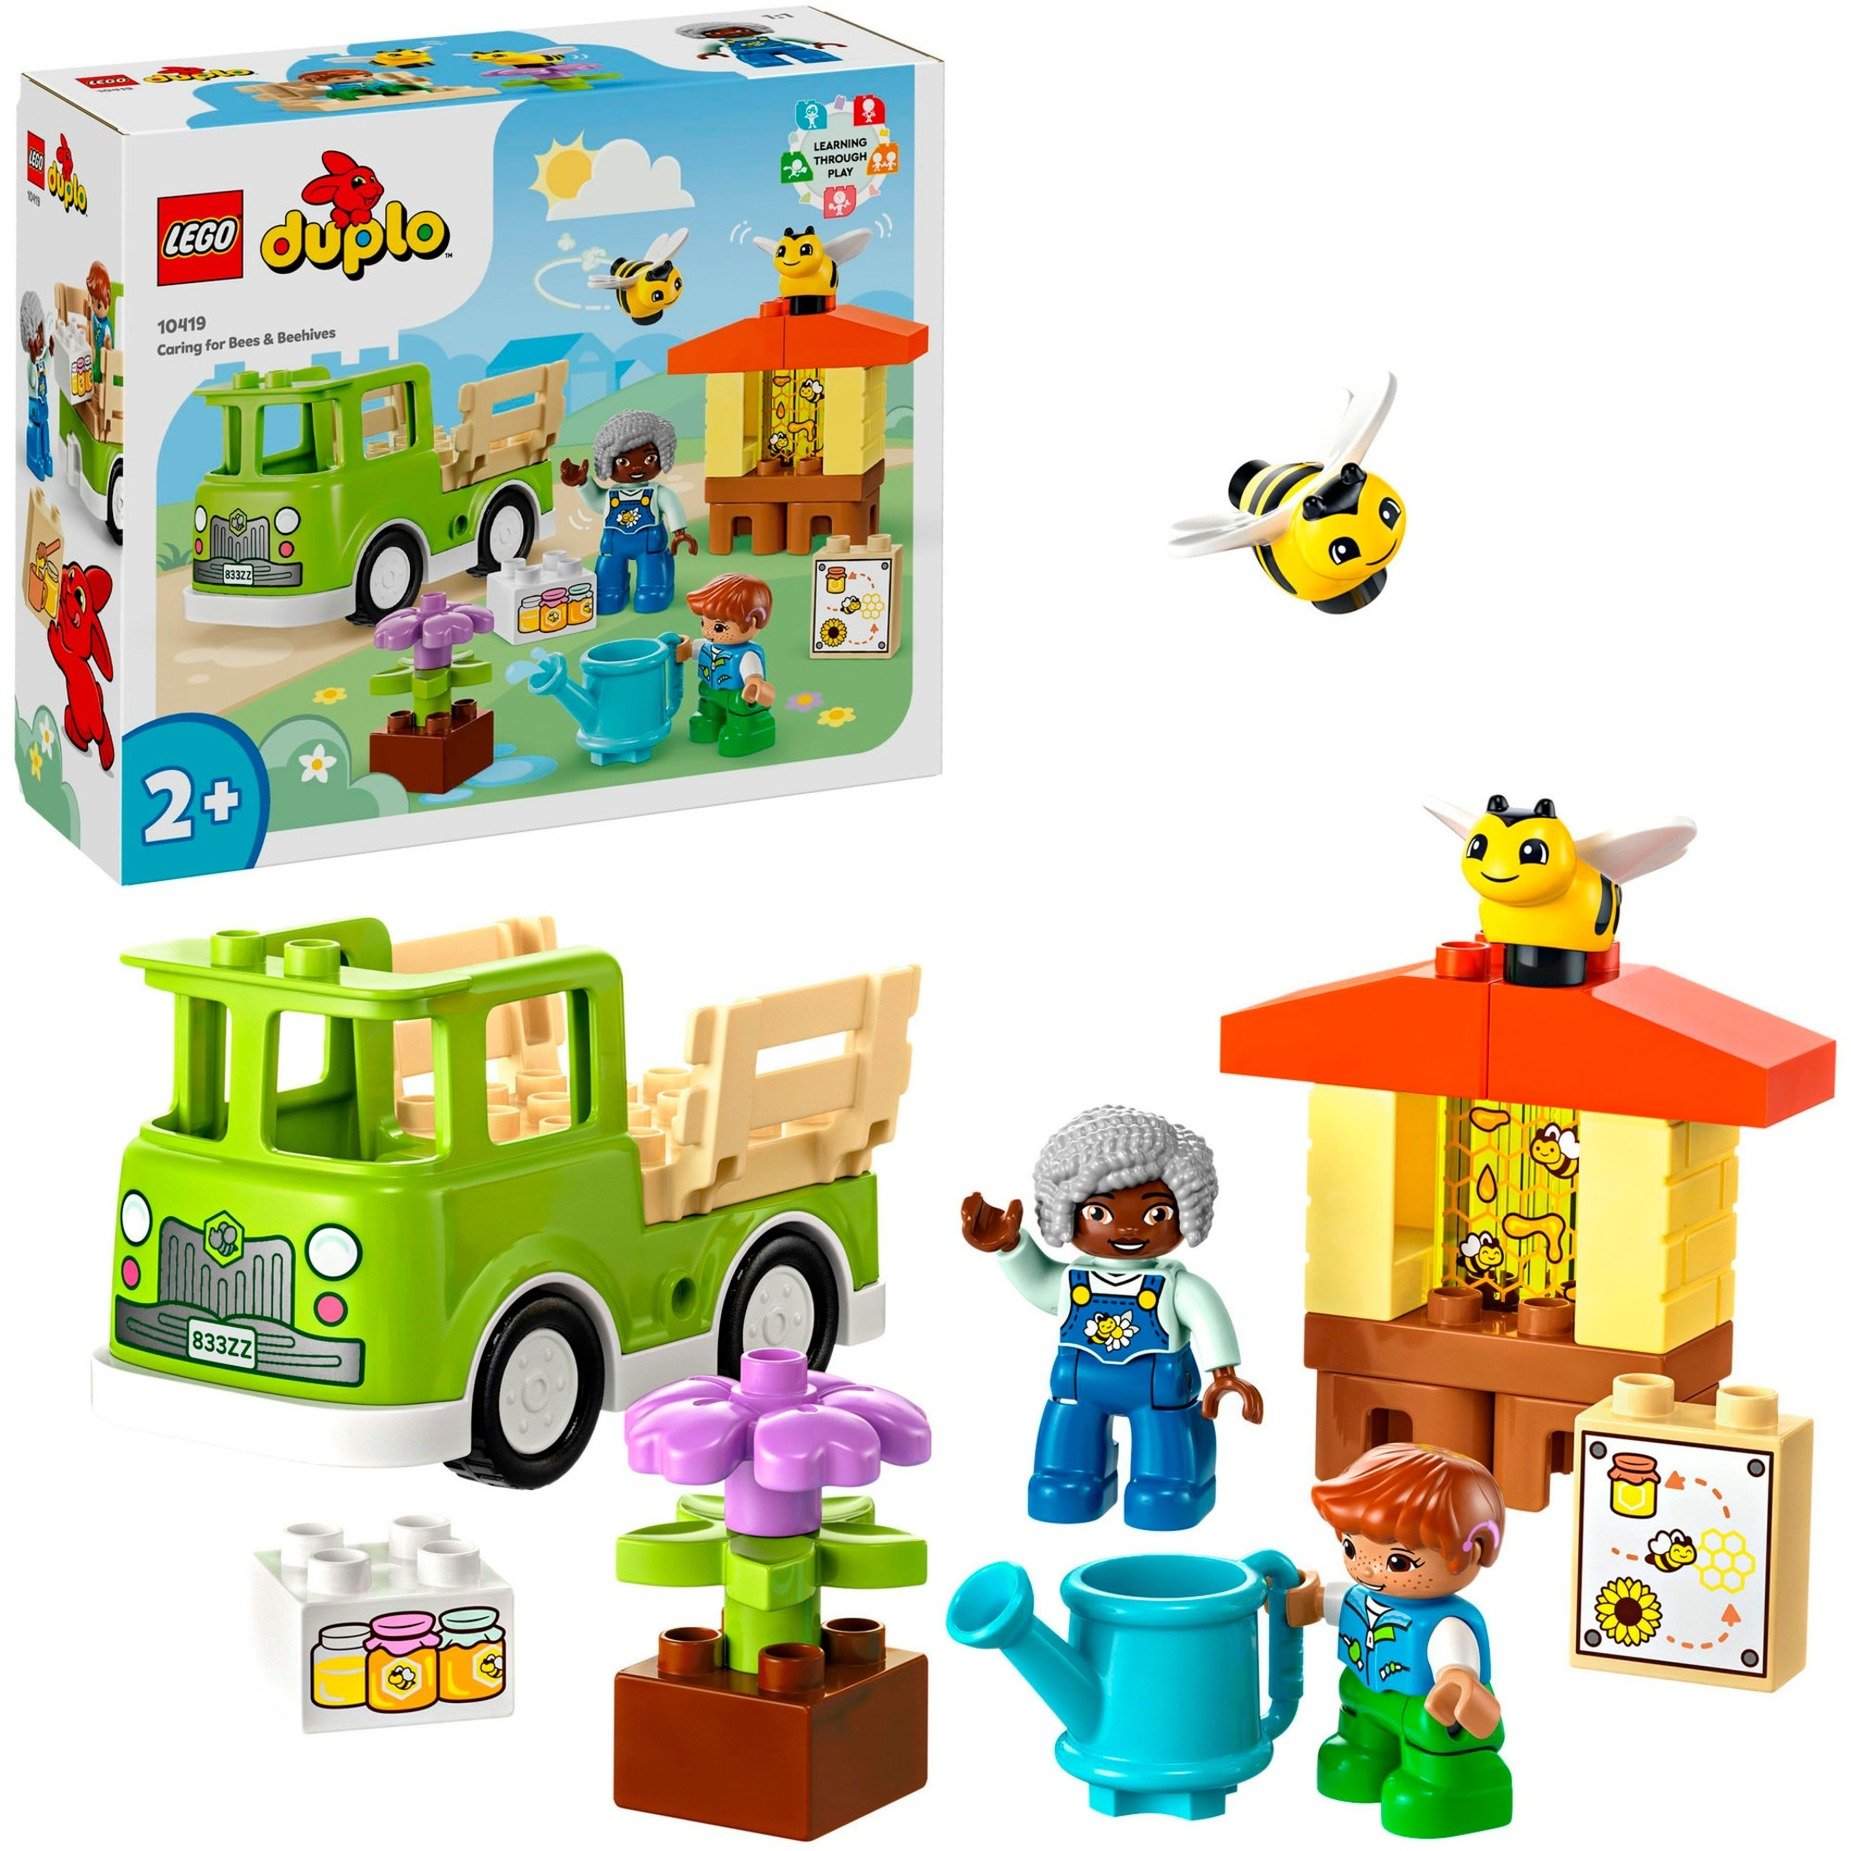 10419 DUPLO Imkerei und Bienenstöcke, Konstruktionsspielzeug von Lego